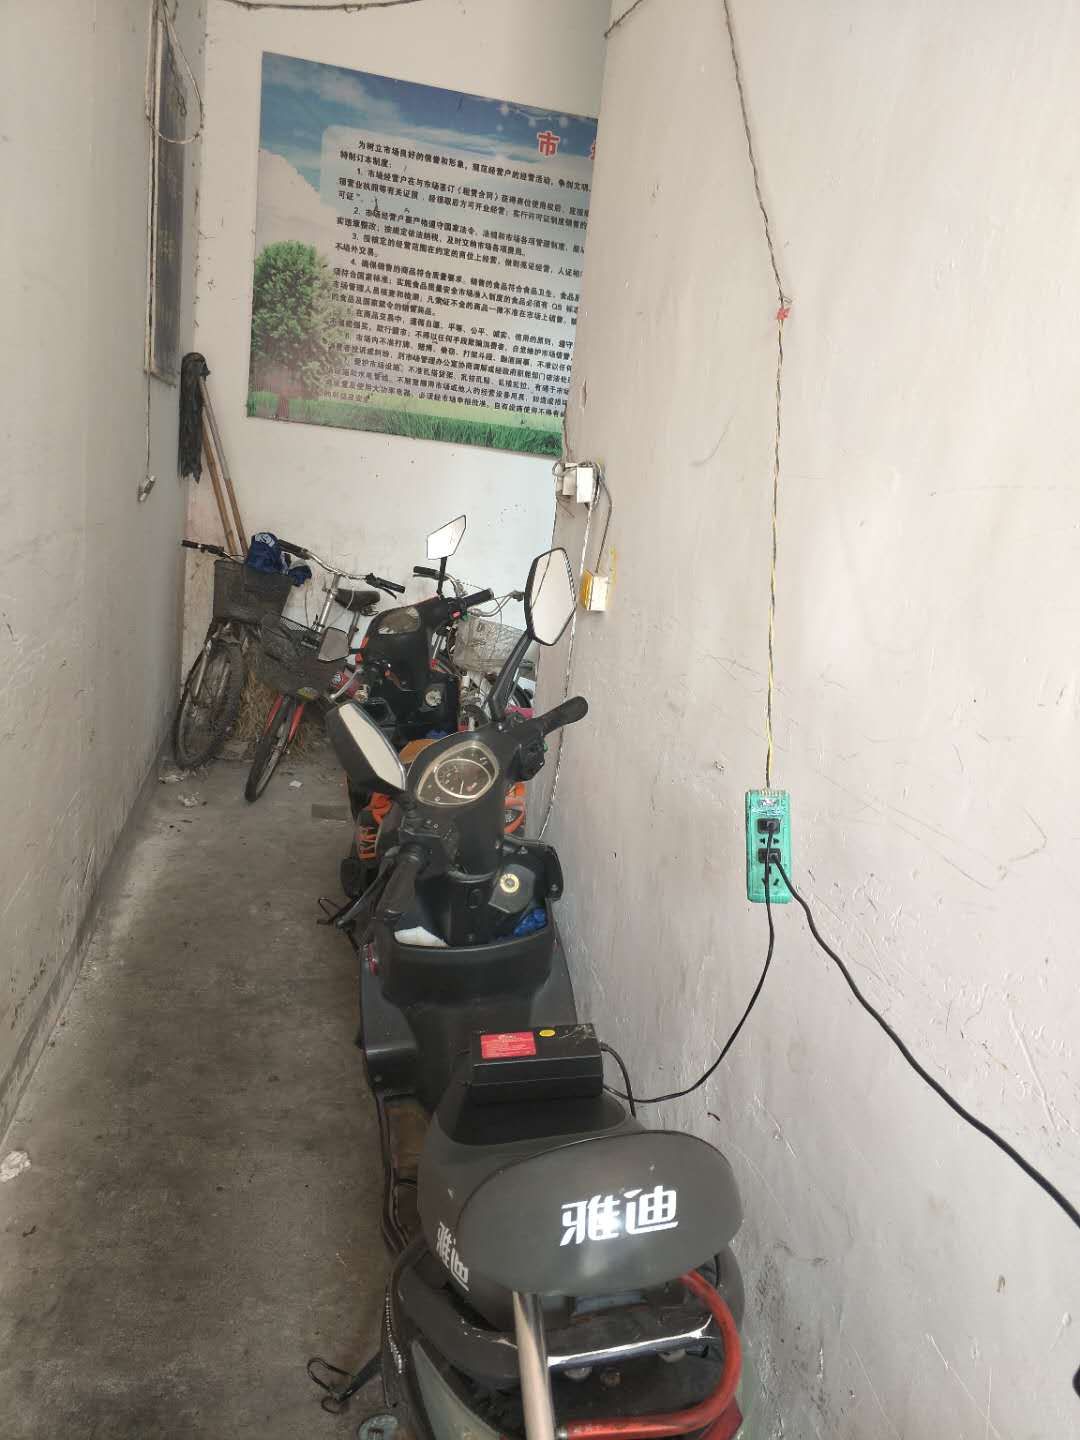 安庆:电动车楼道口充电隐患大